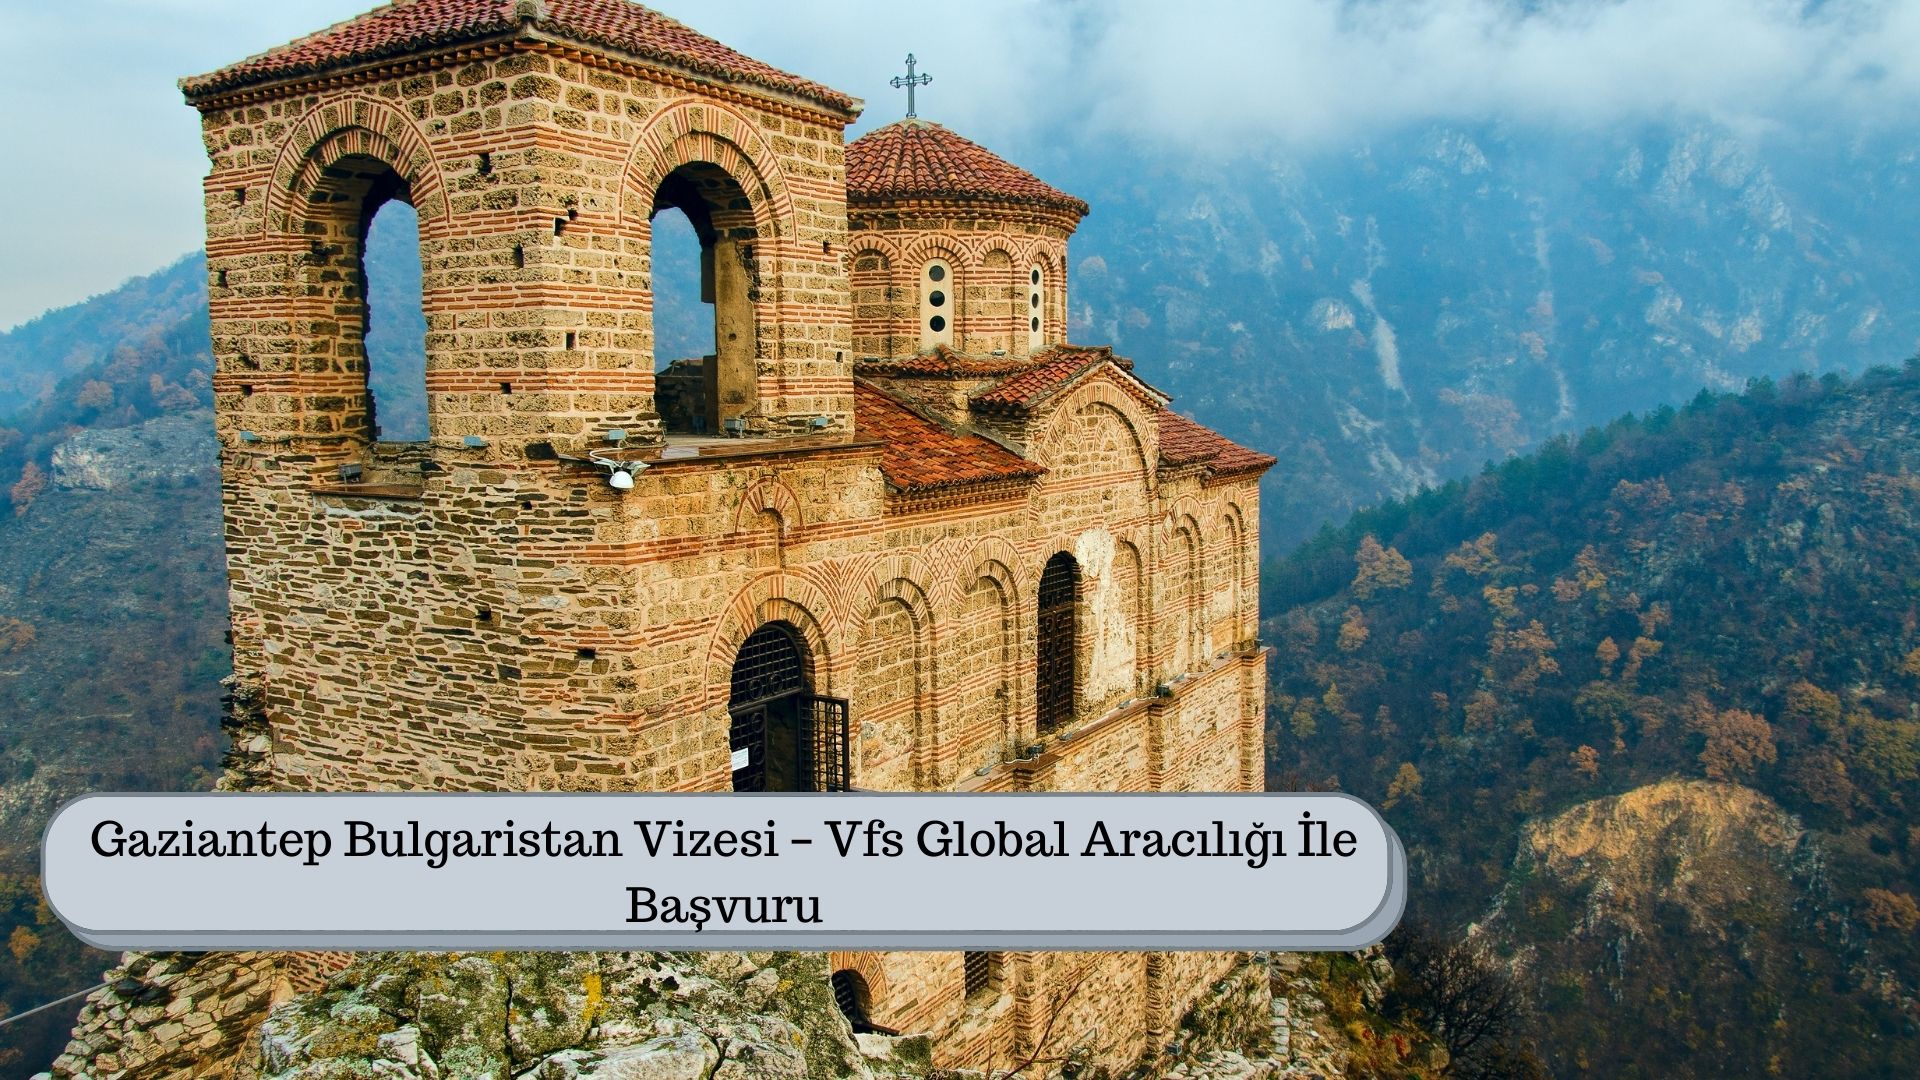 Gaziantep Bulgaristan Vizesi – Vfs Global Aracılığı İle Başvuru